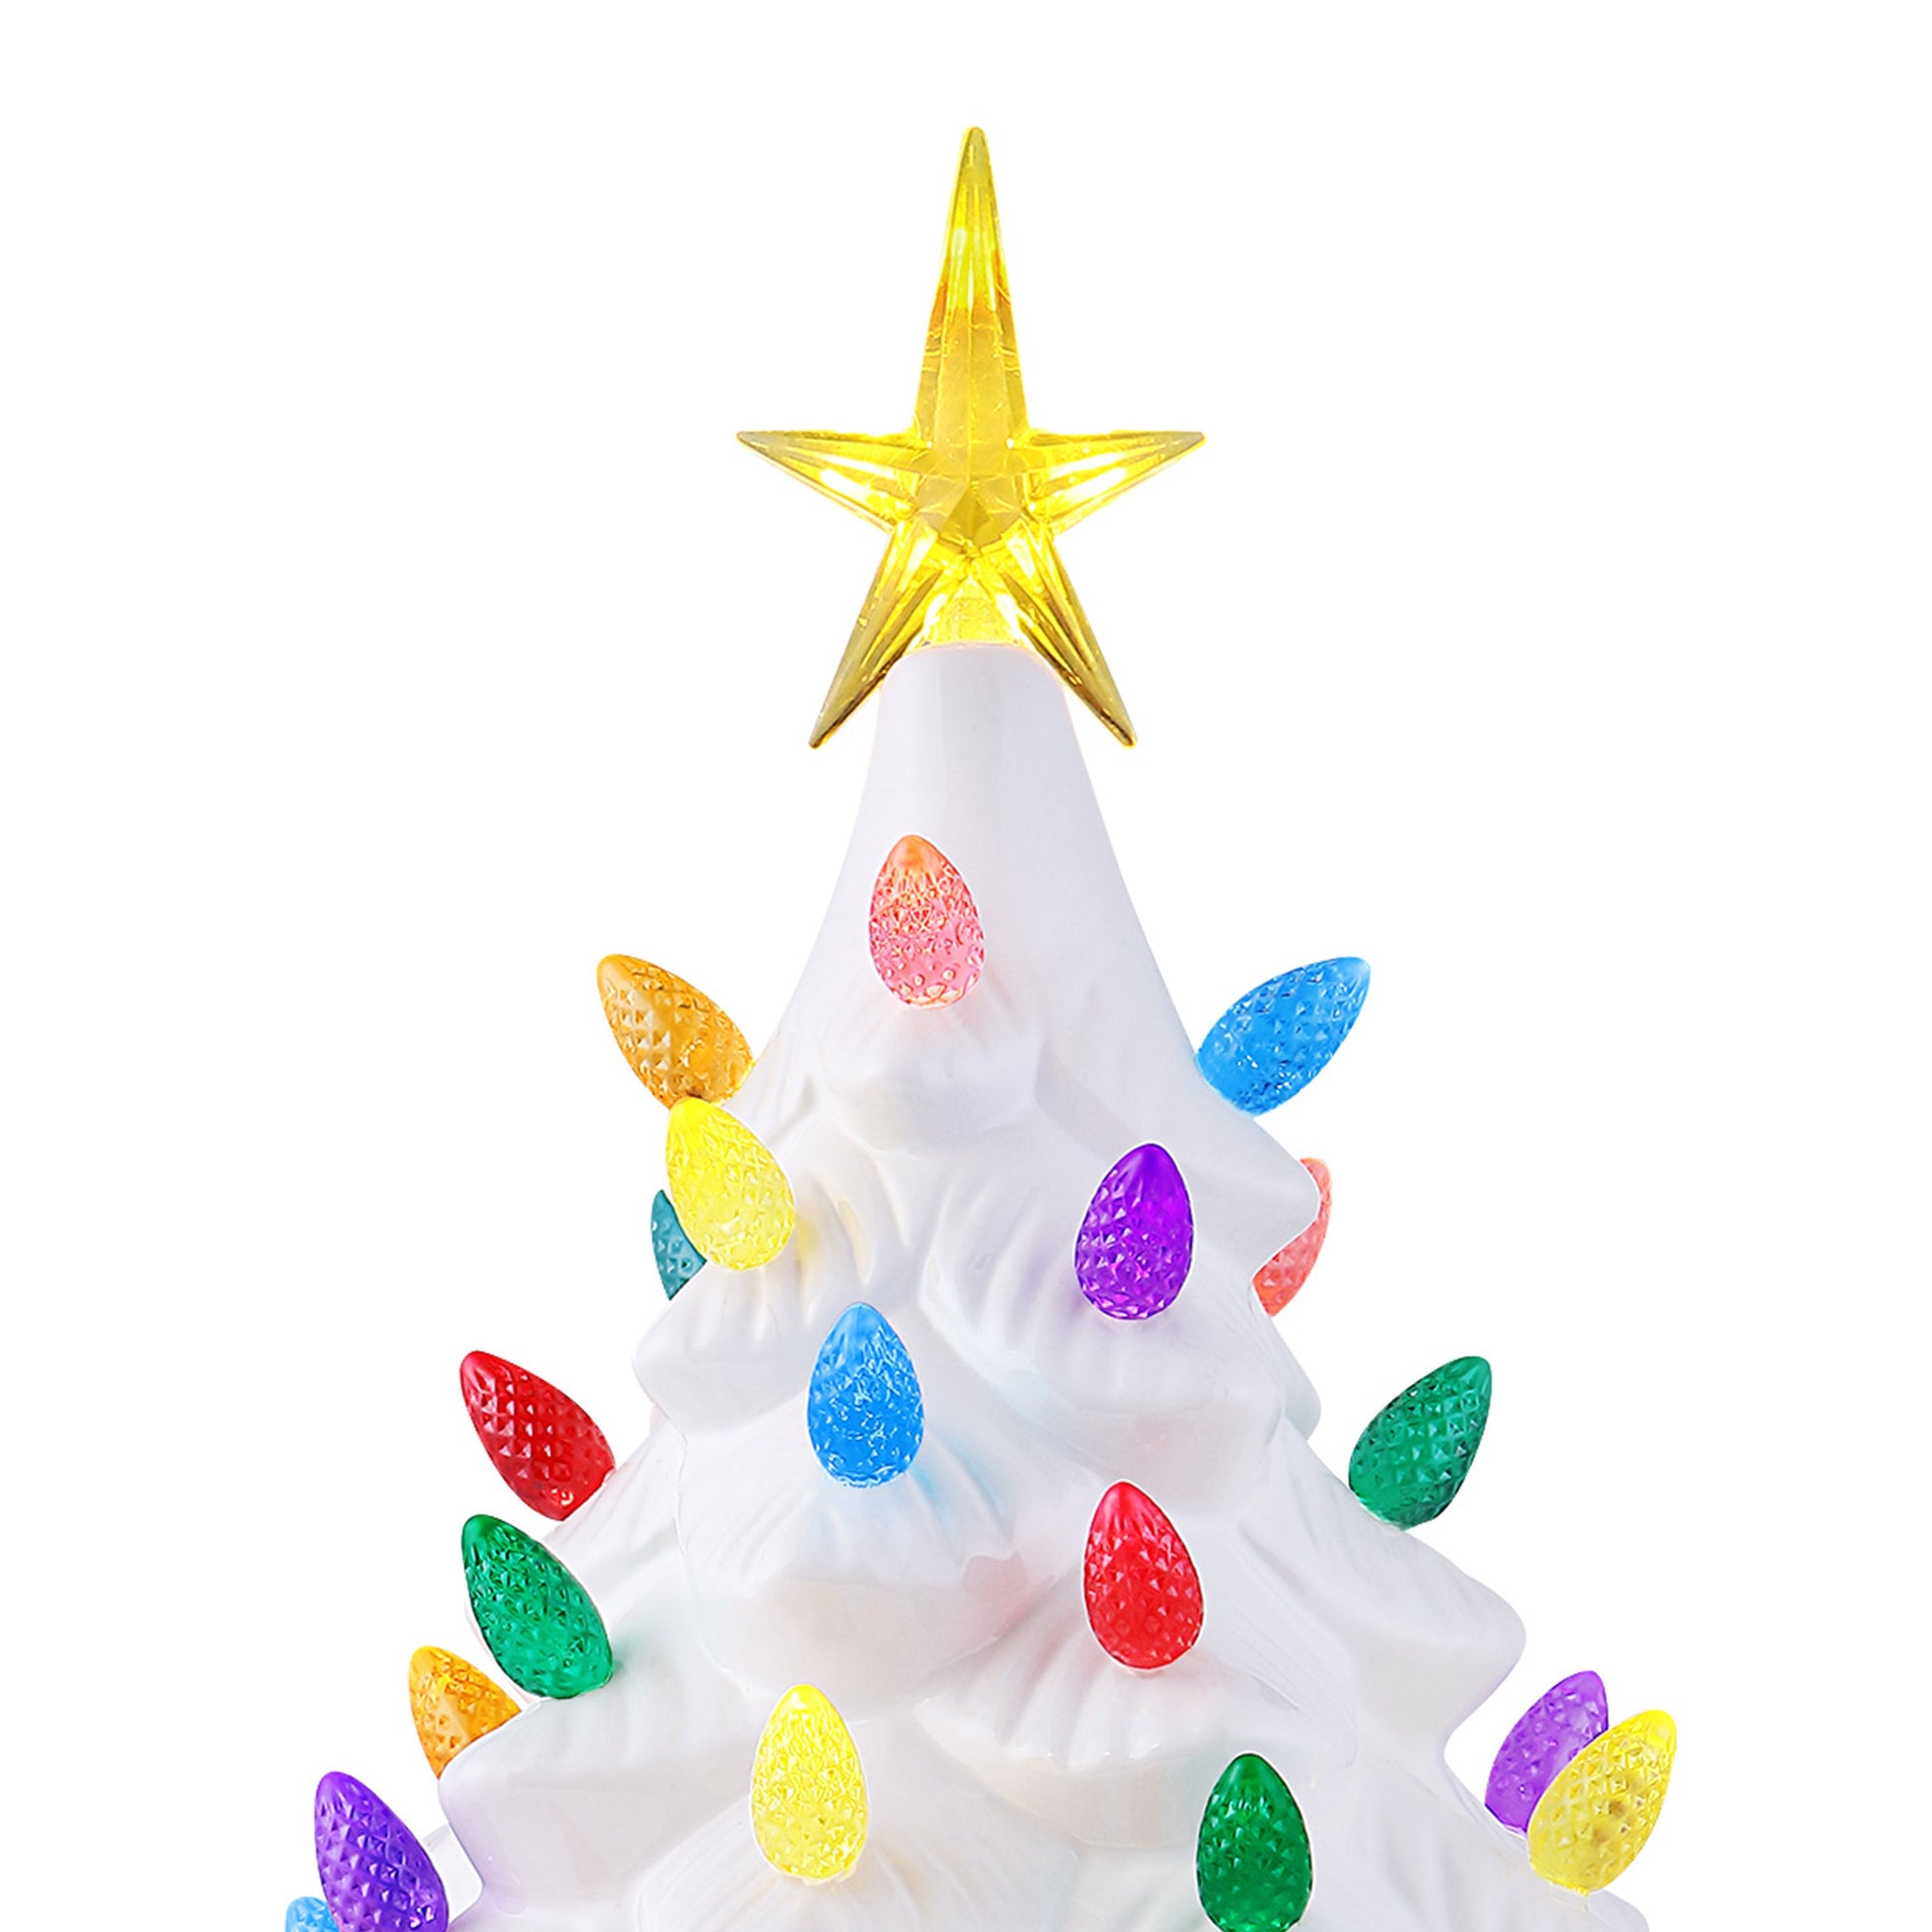 Mr. Christmas Animated Nostalgic Ceramic LED White Christmas Tree - 14